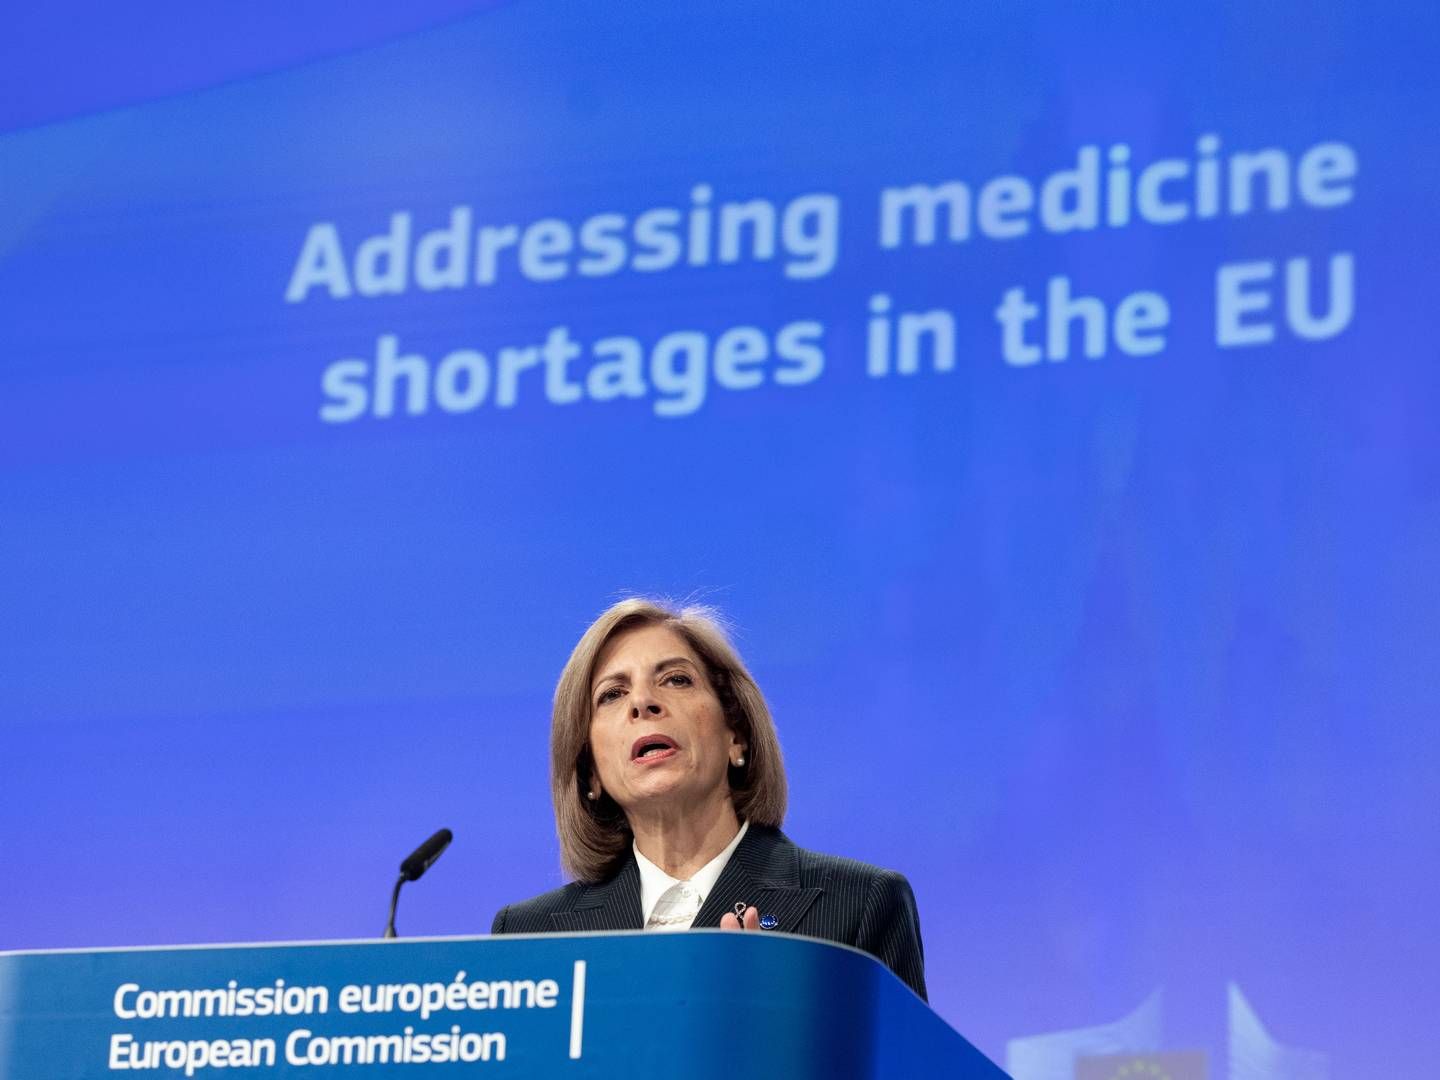 Europa-Kommissionen, her repræsenteret ved sundhedskommissær Stella Kyriakides, har udarbejdet listen i samarbejde med Det Europæiske Lægemiddelagentur (EMA) og Heads of Medicines Agency (HMA). | Foto: European Union / Europa-kommissionen